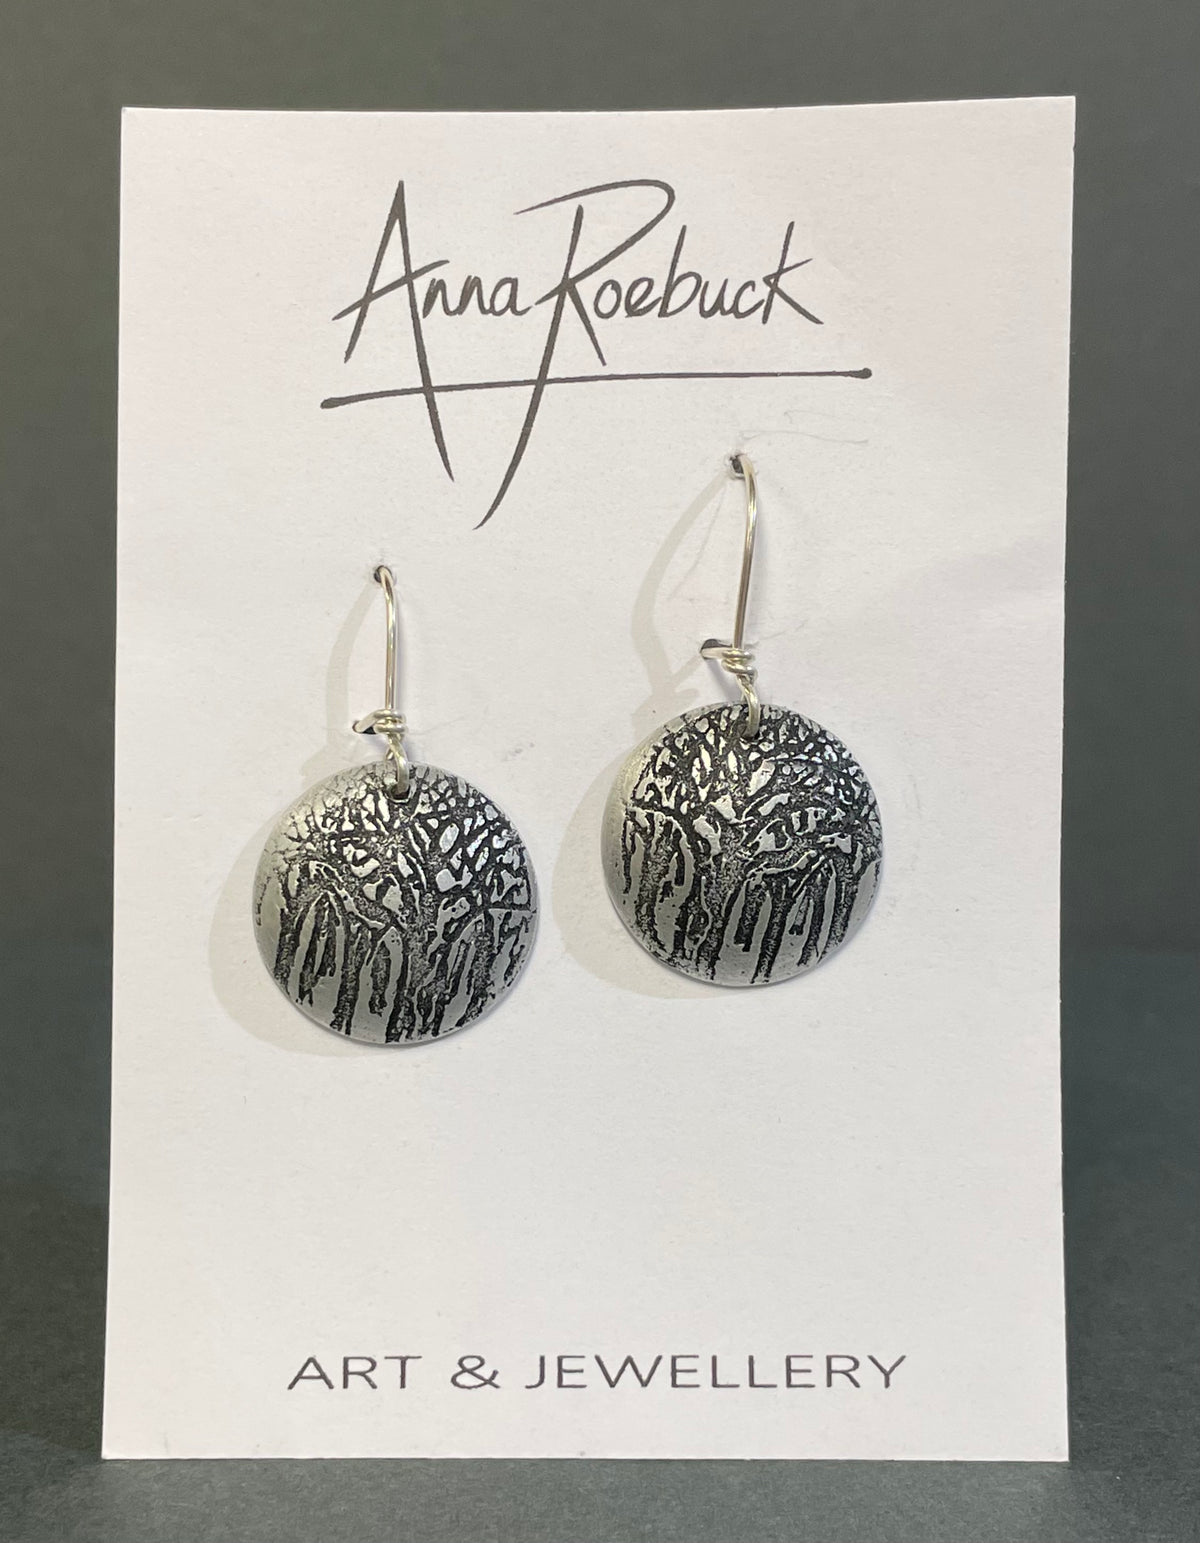 Trees Aluminium earrings by Anna Roebuck